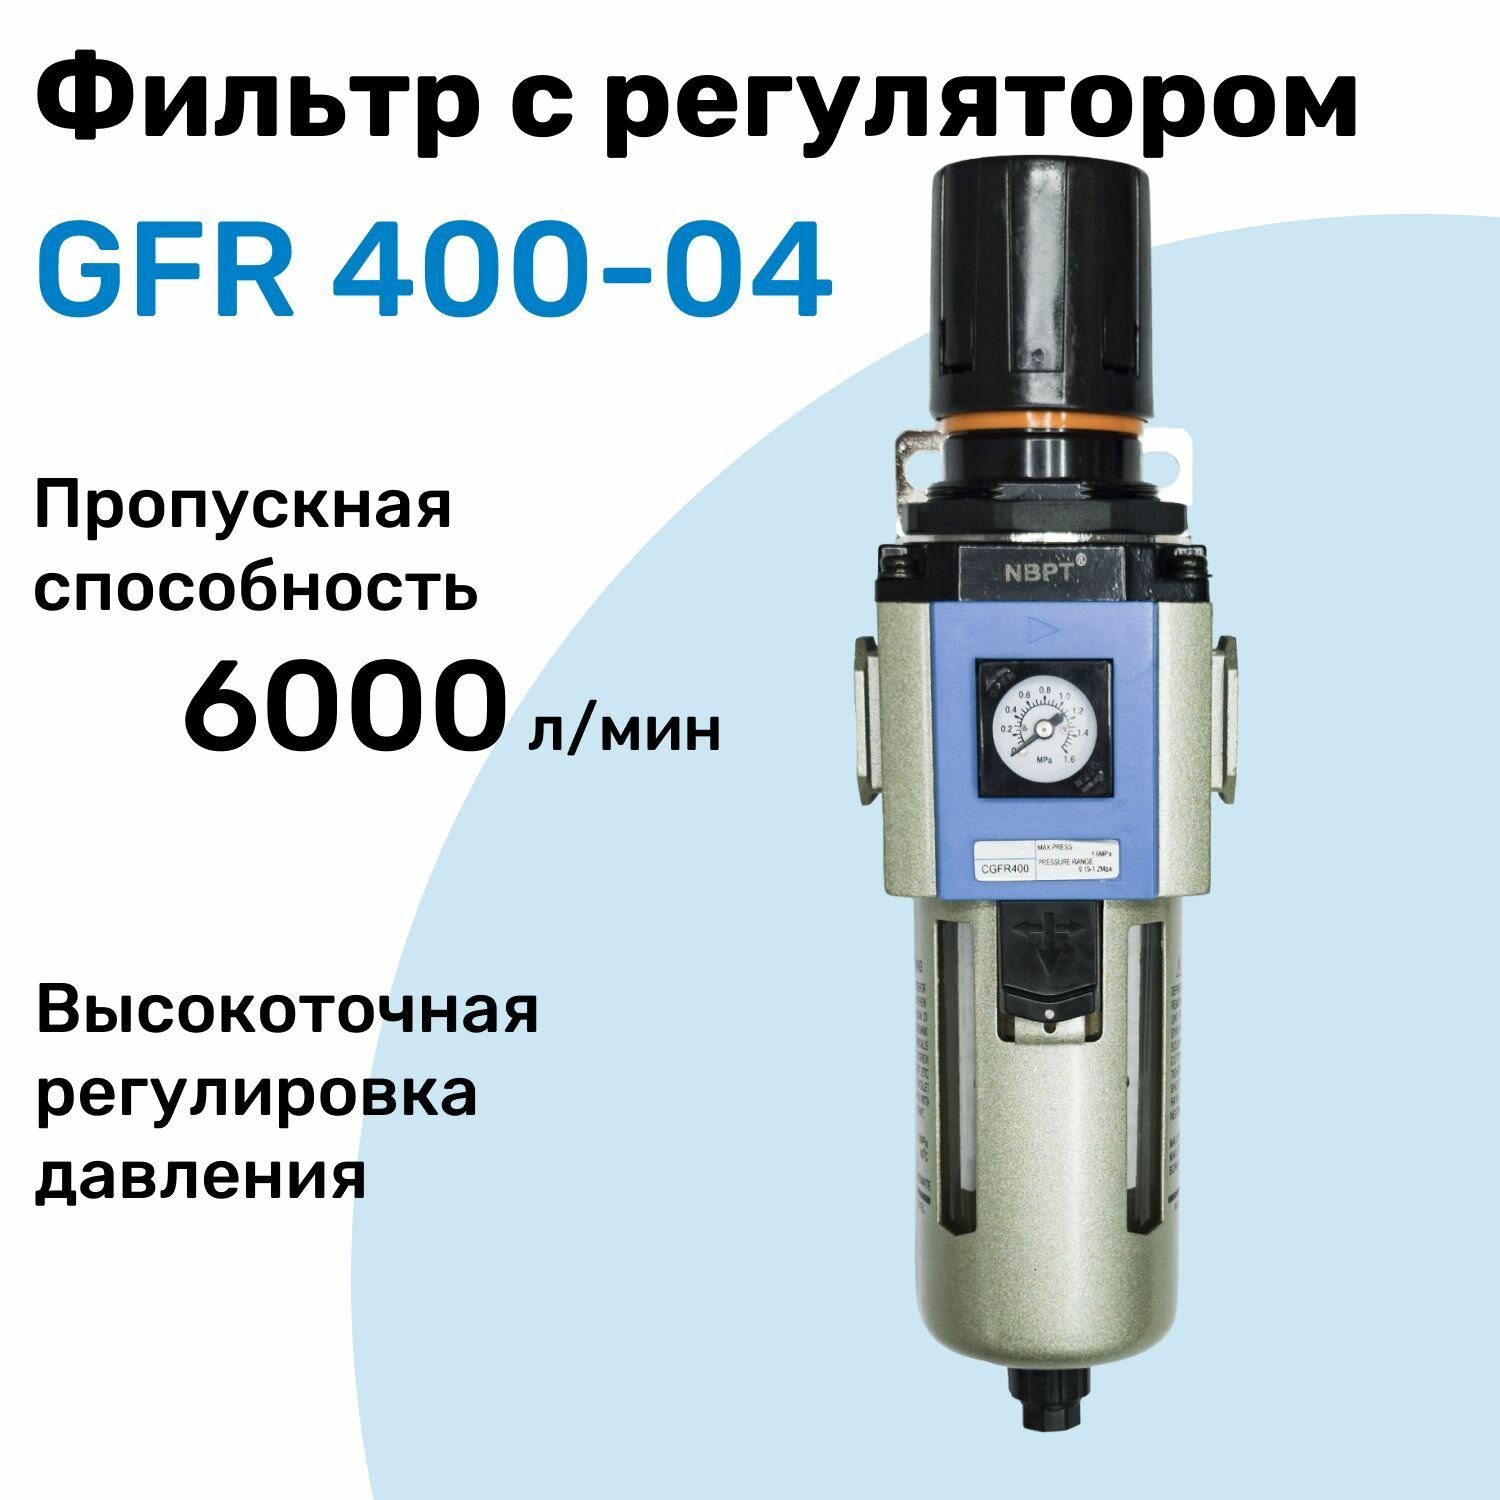 Фильтр с регулятором GFR 400-04, R1/2", Очистка 25мкм, Встроенный манометр, Блок подготовки воздуха NBPT